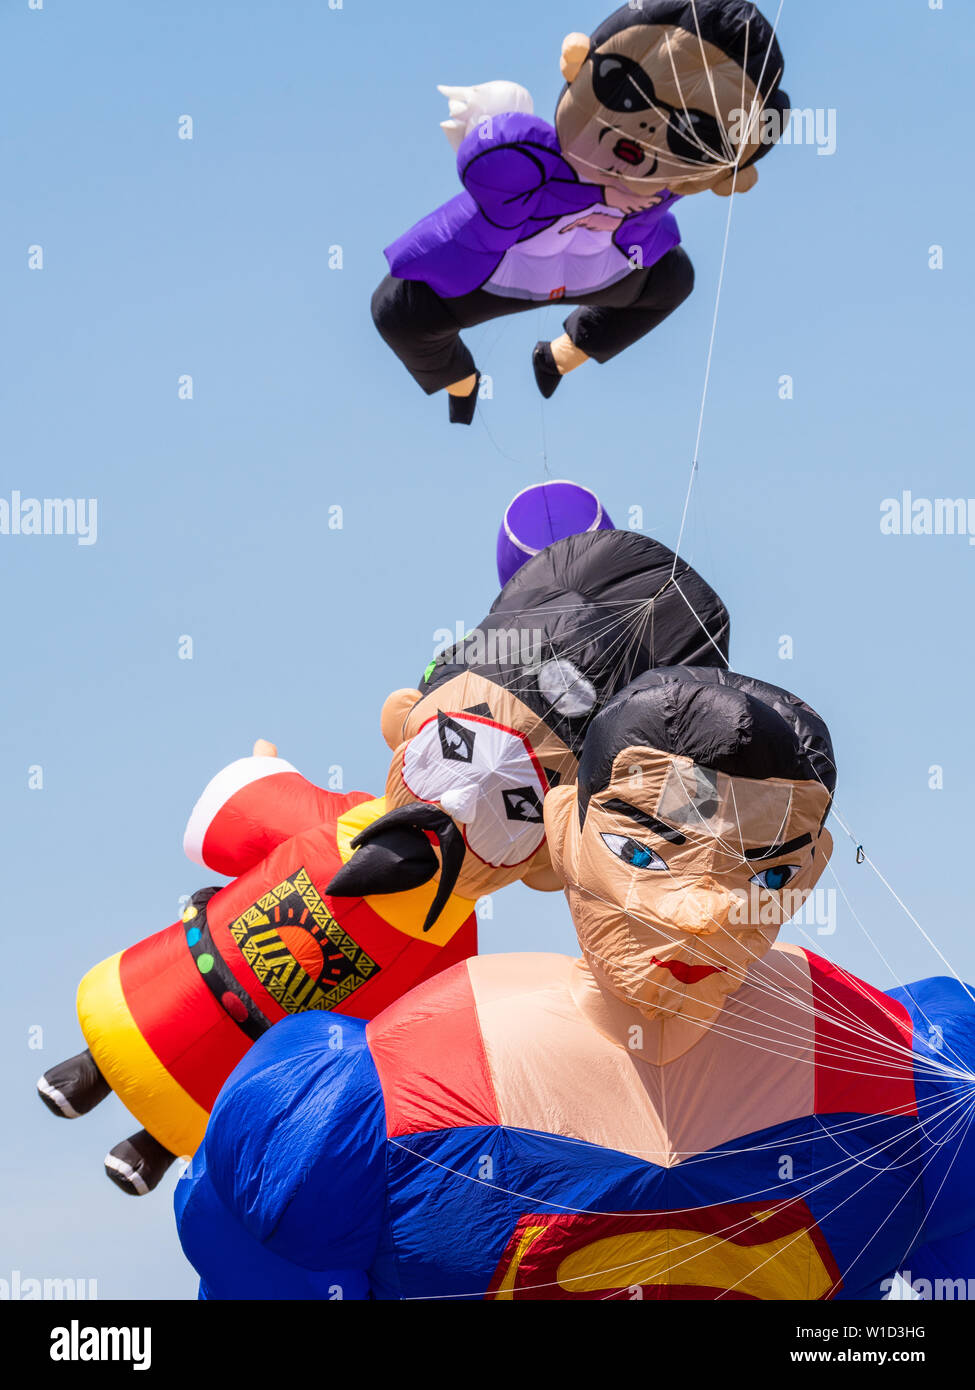 Pasir Gudang, Malaysia - March 3, 2019: Soft kites depicting Superman, an ancient Chinese king and Korean artist Psy, flying at the 24th Pasir Gudang Stock Photo